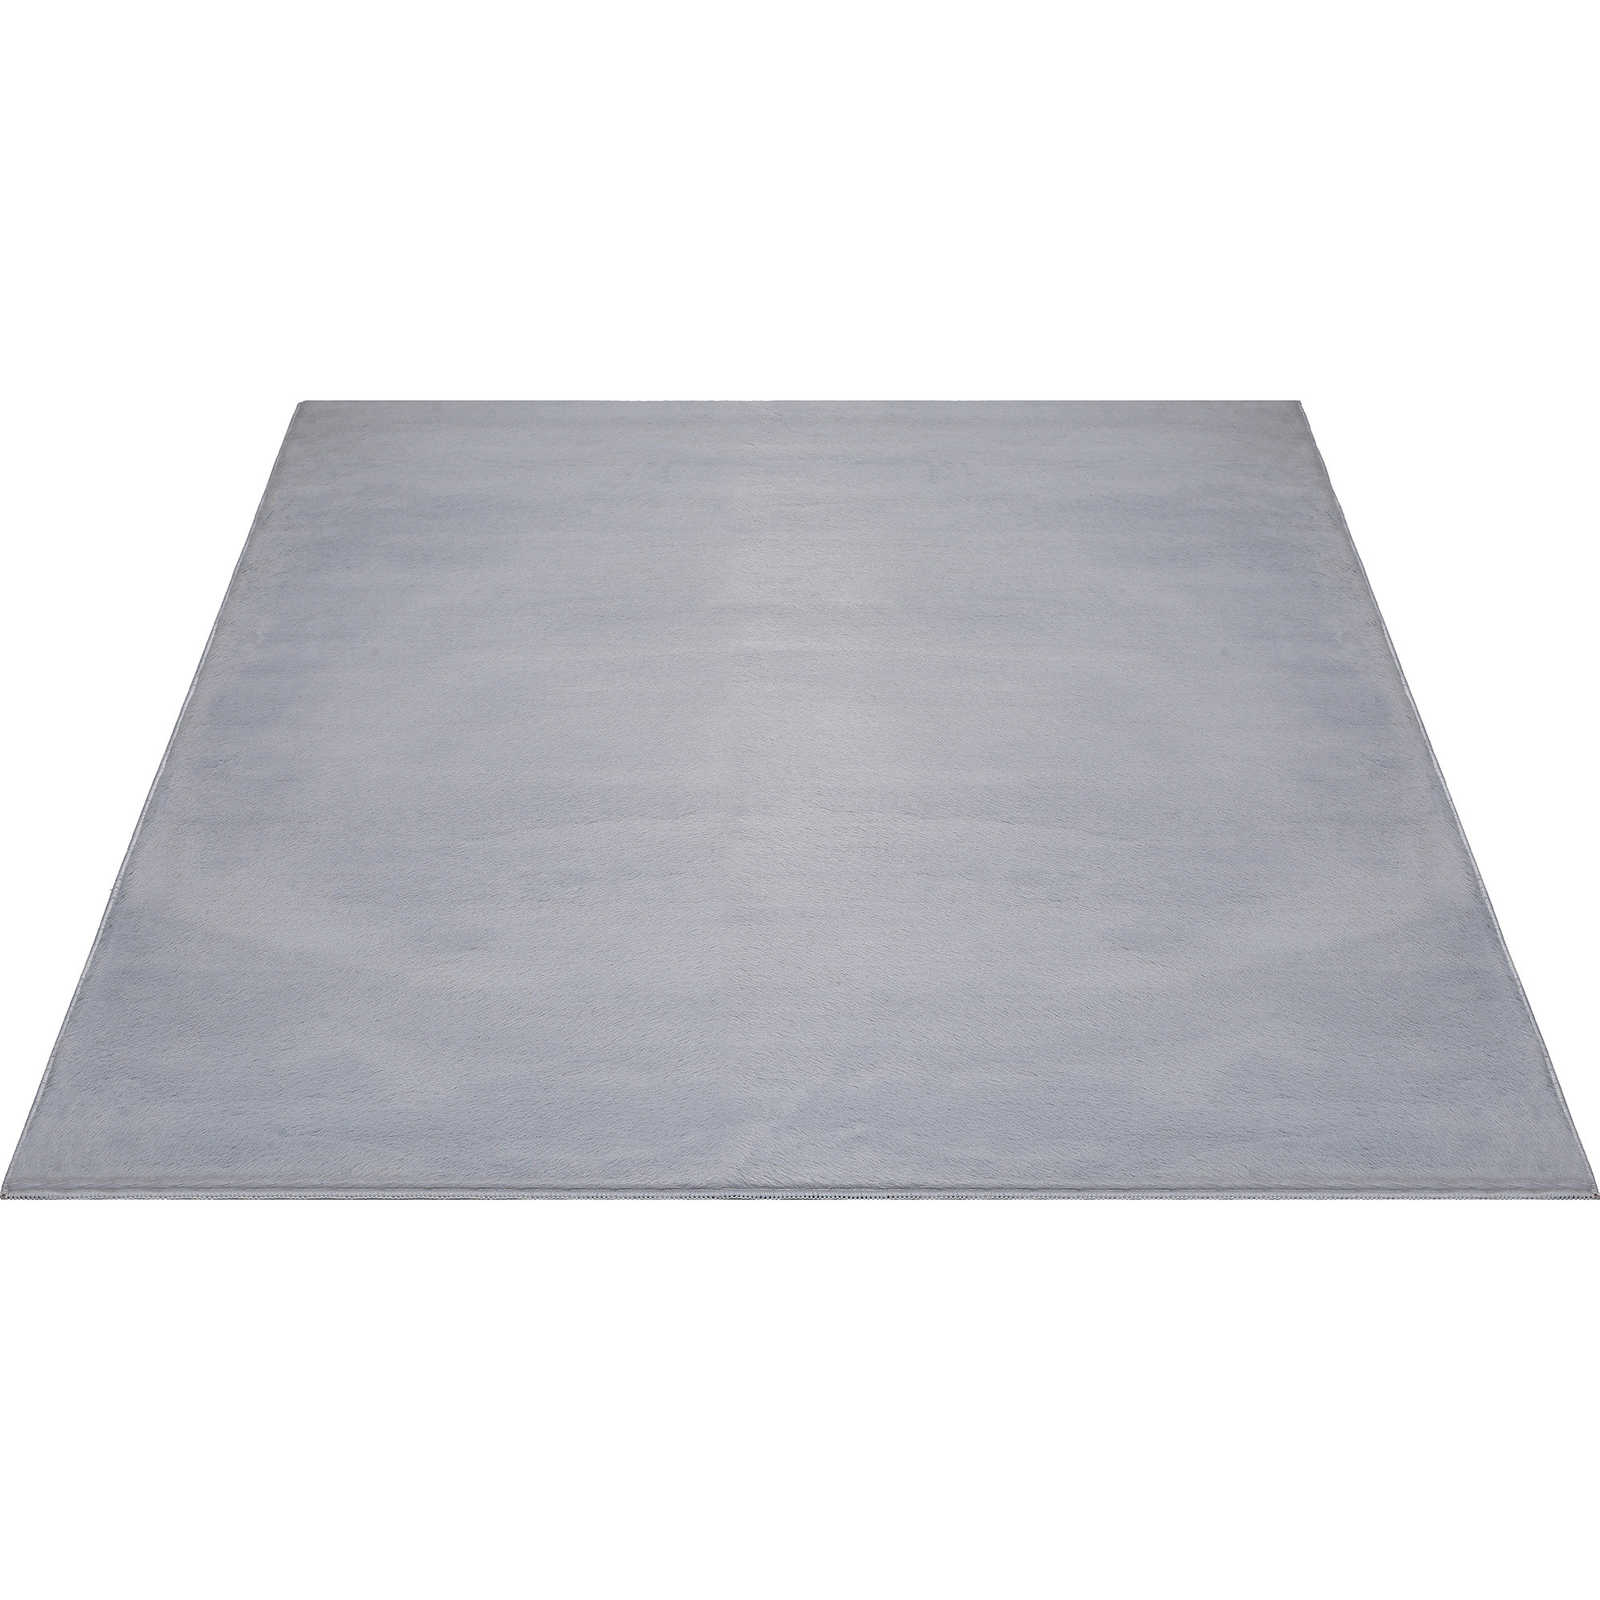 Confortevole tappeto a pelo alto in morbido grigio - 340 x 240 cm
